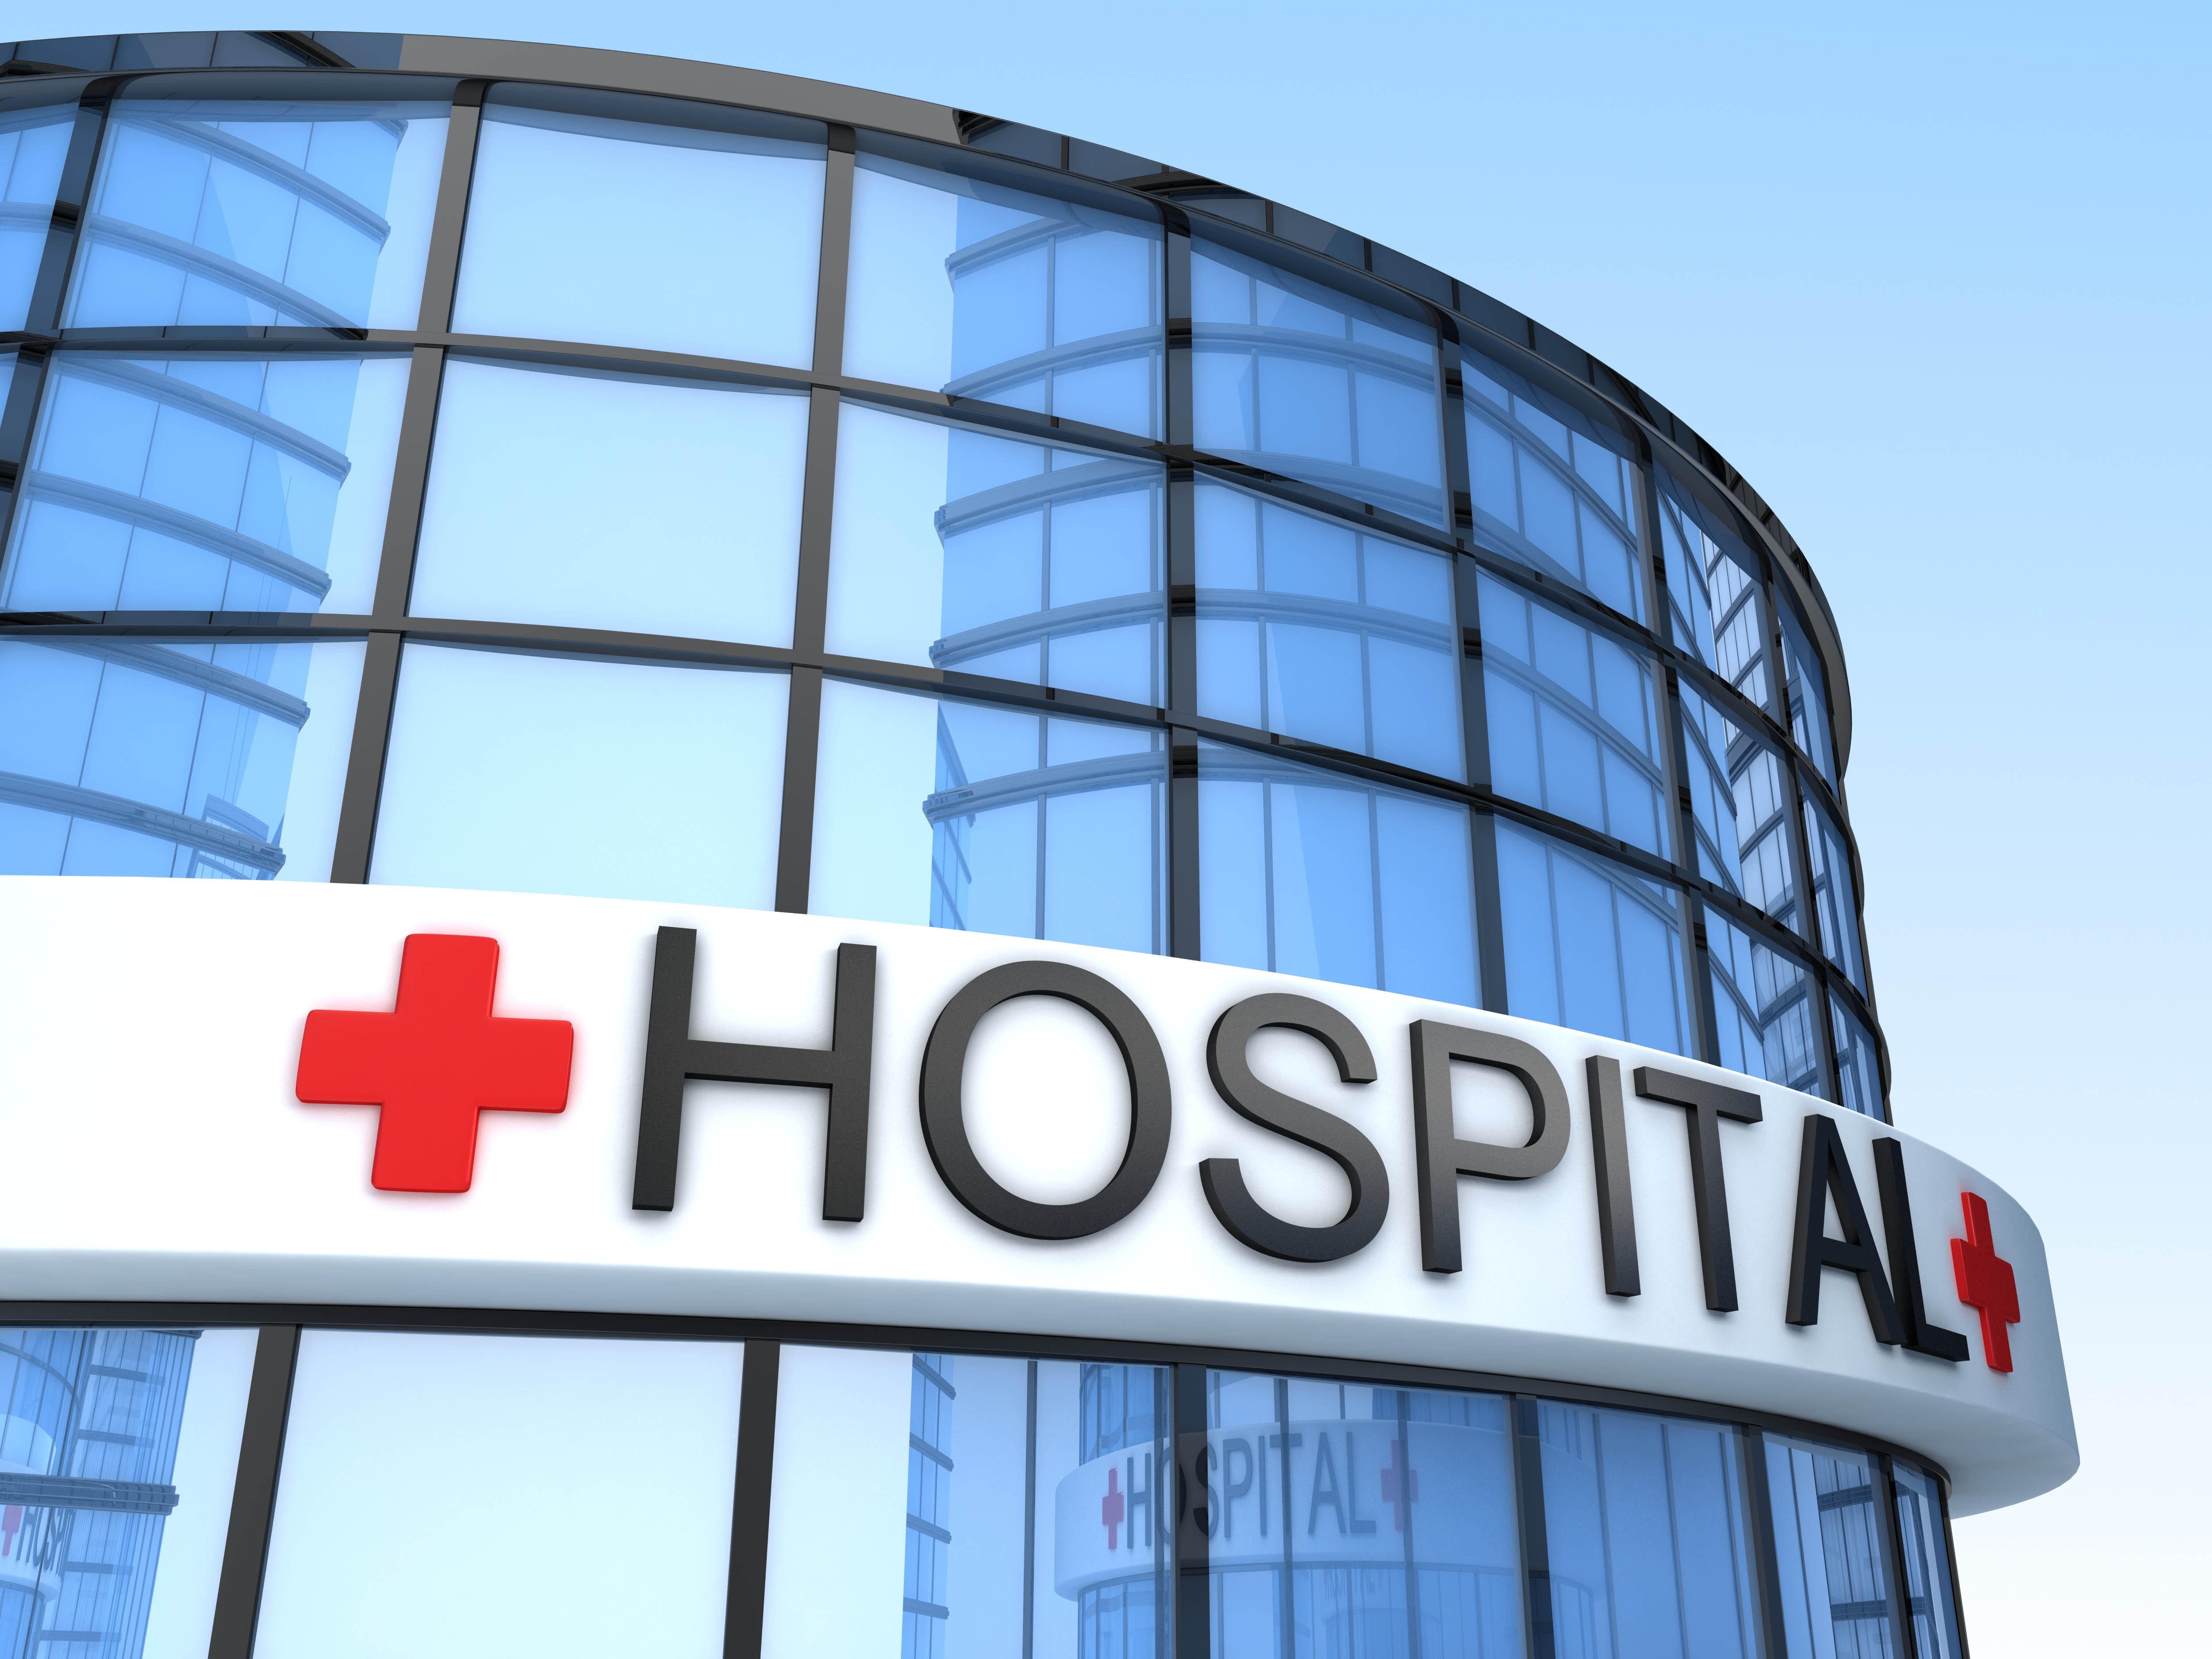 U.S. hospital to appear in Georgia